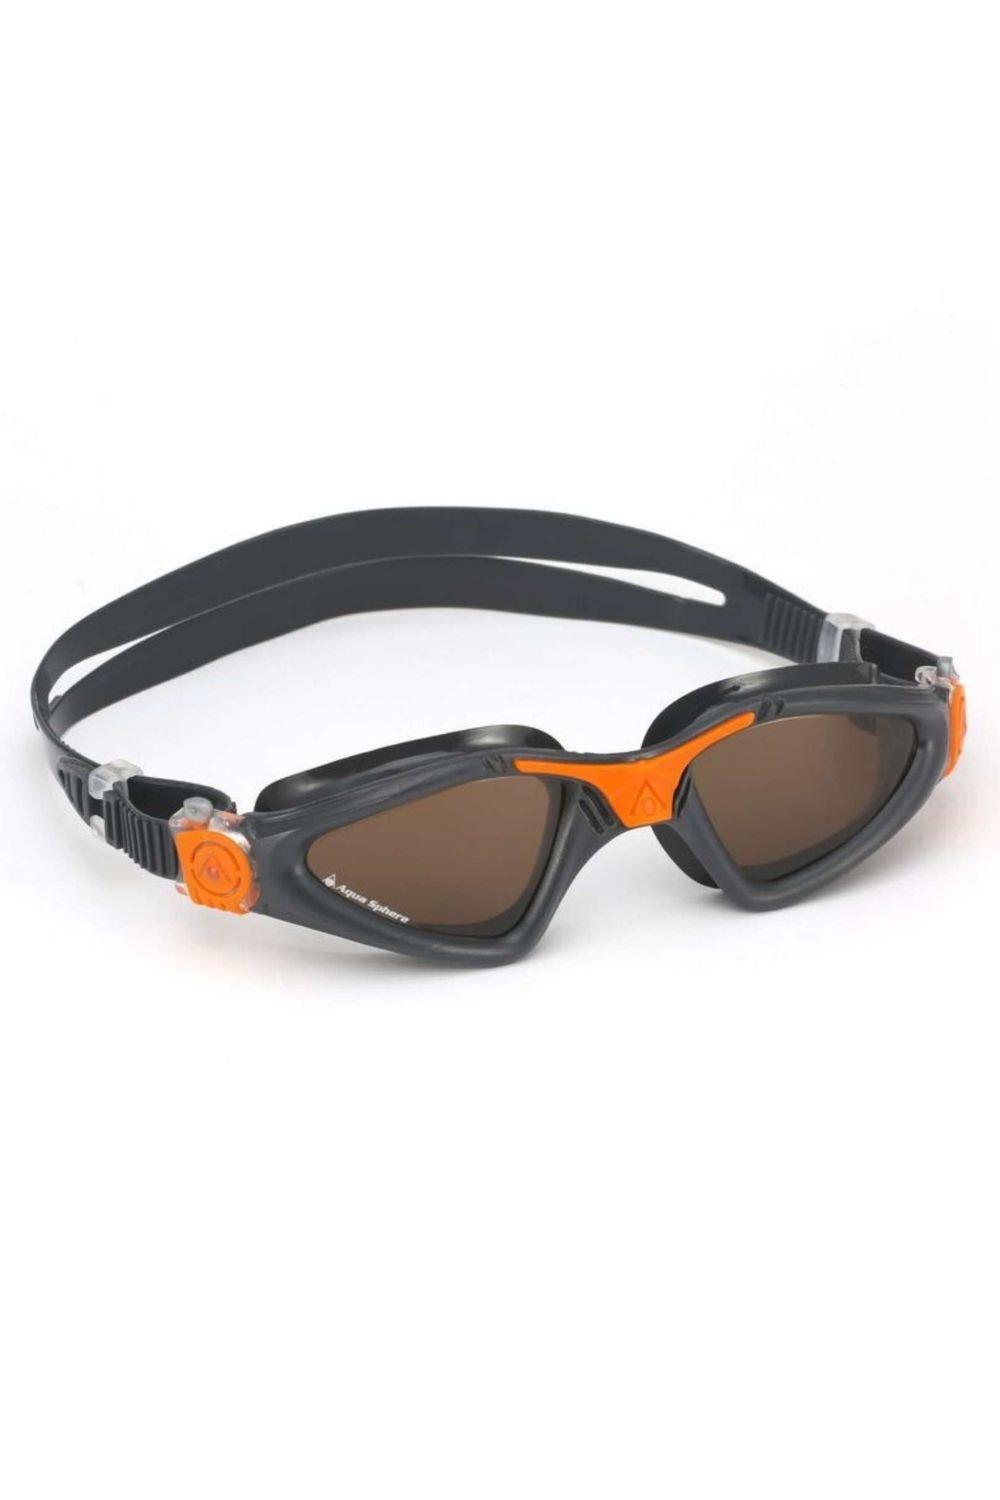 Kayenne Swimming Goggle - Polarized Lenses